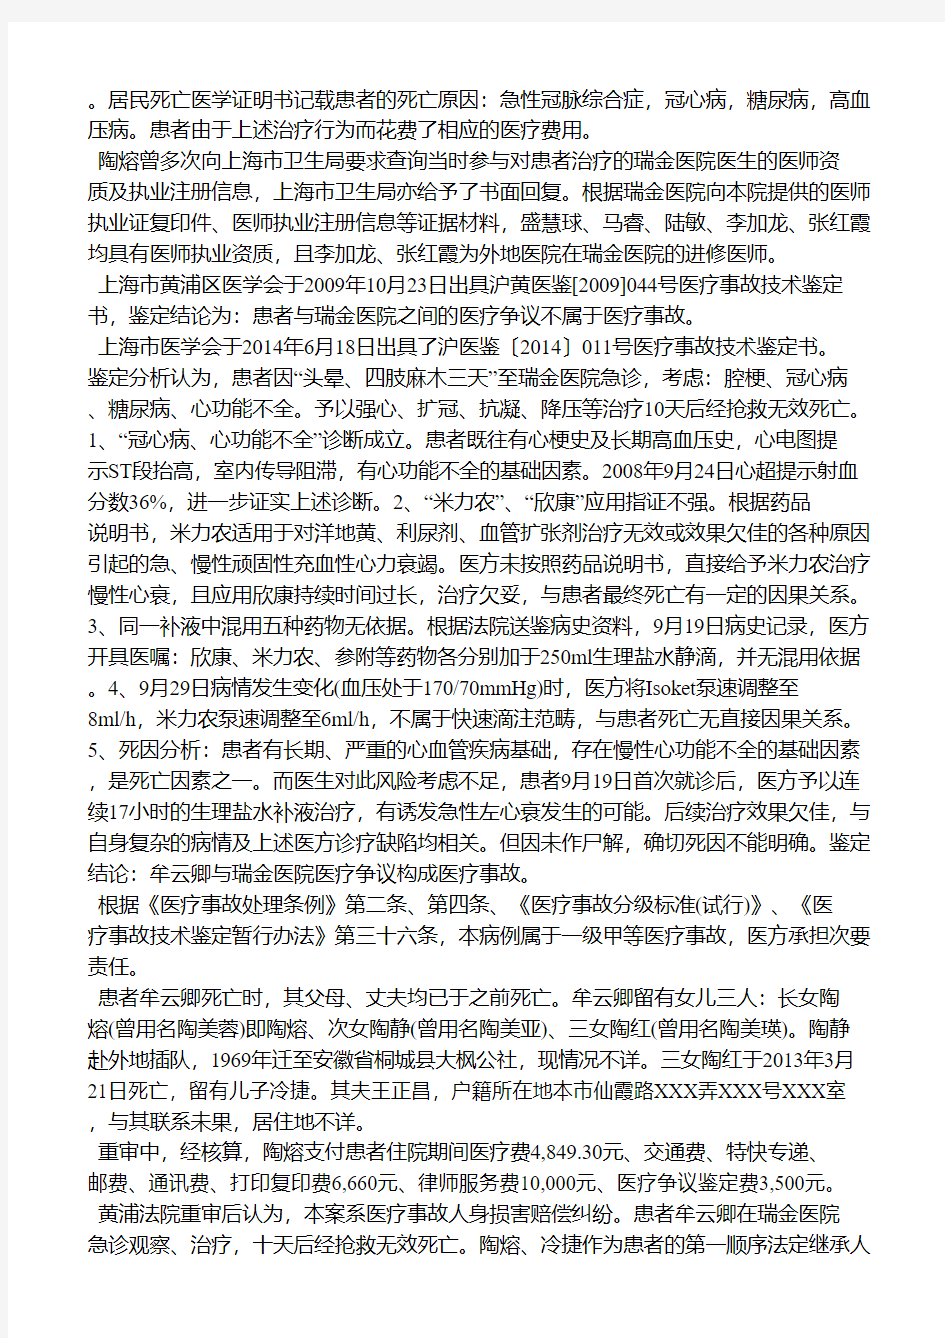 上海市第二中级人民法院民事判决书